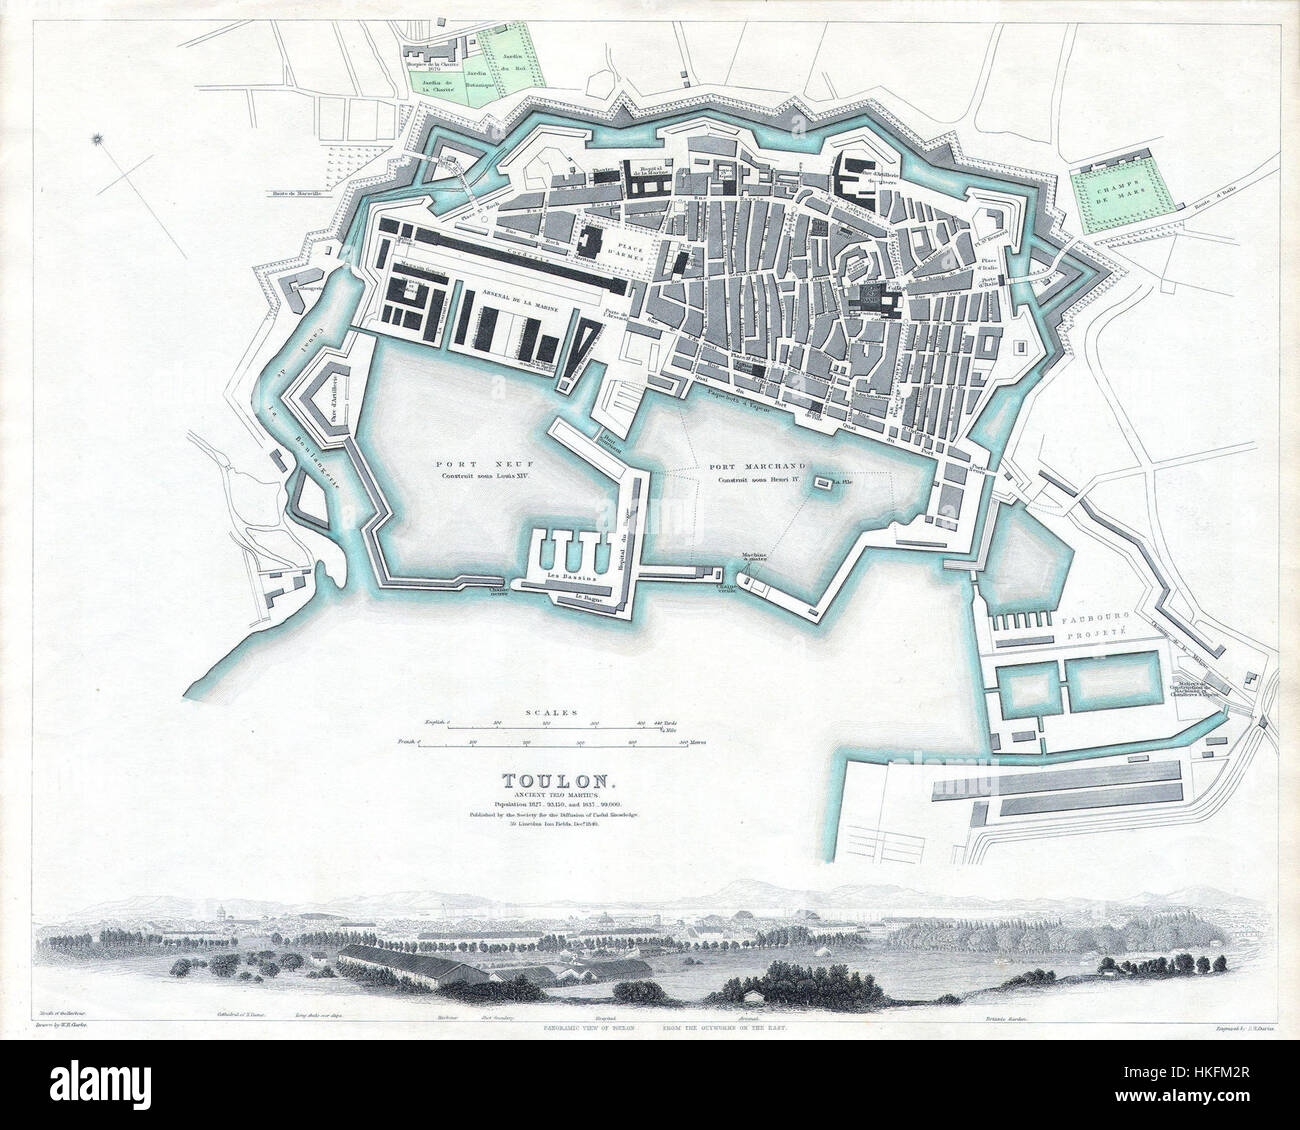 1840 S.D.U.K. Carte ou plan de ville de Toulon, France Geographicus Tulon SDUK 1840 Banque D'Images